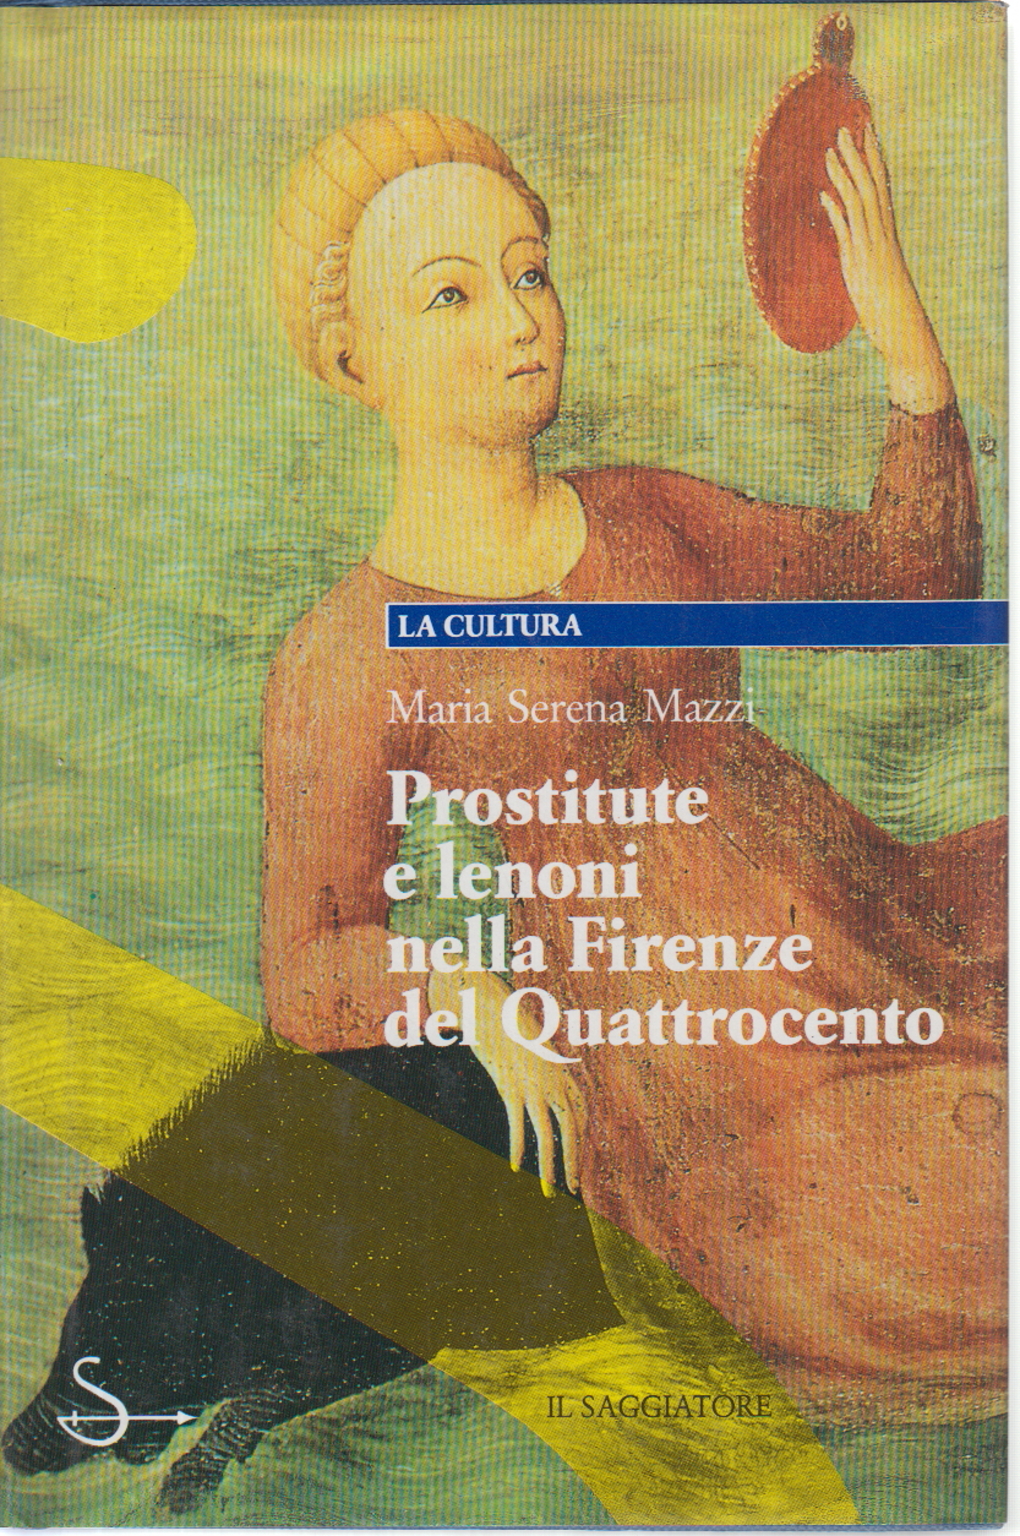 Prostitutas y proxenetas en la Florencia de